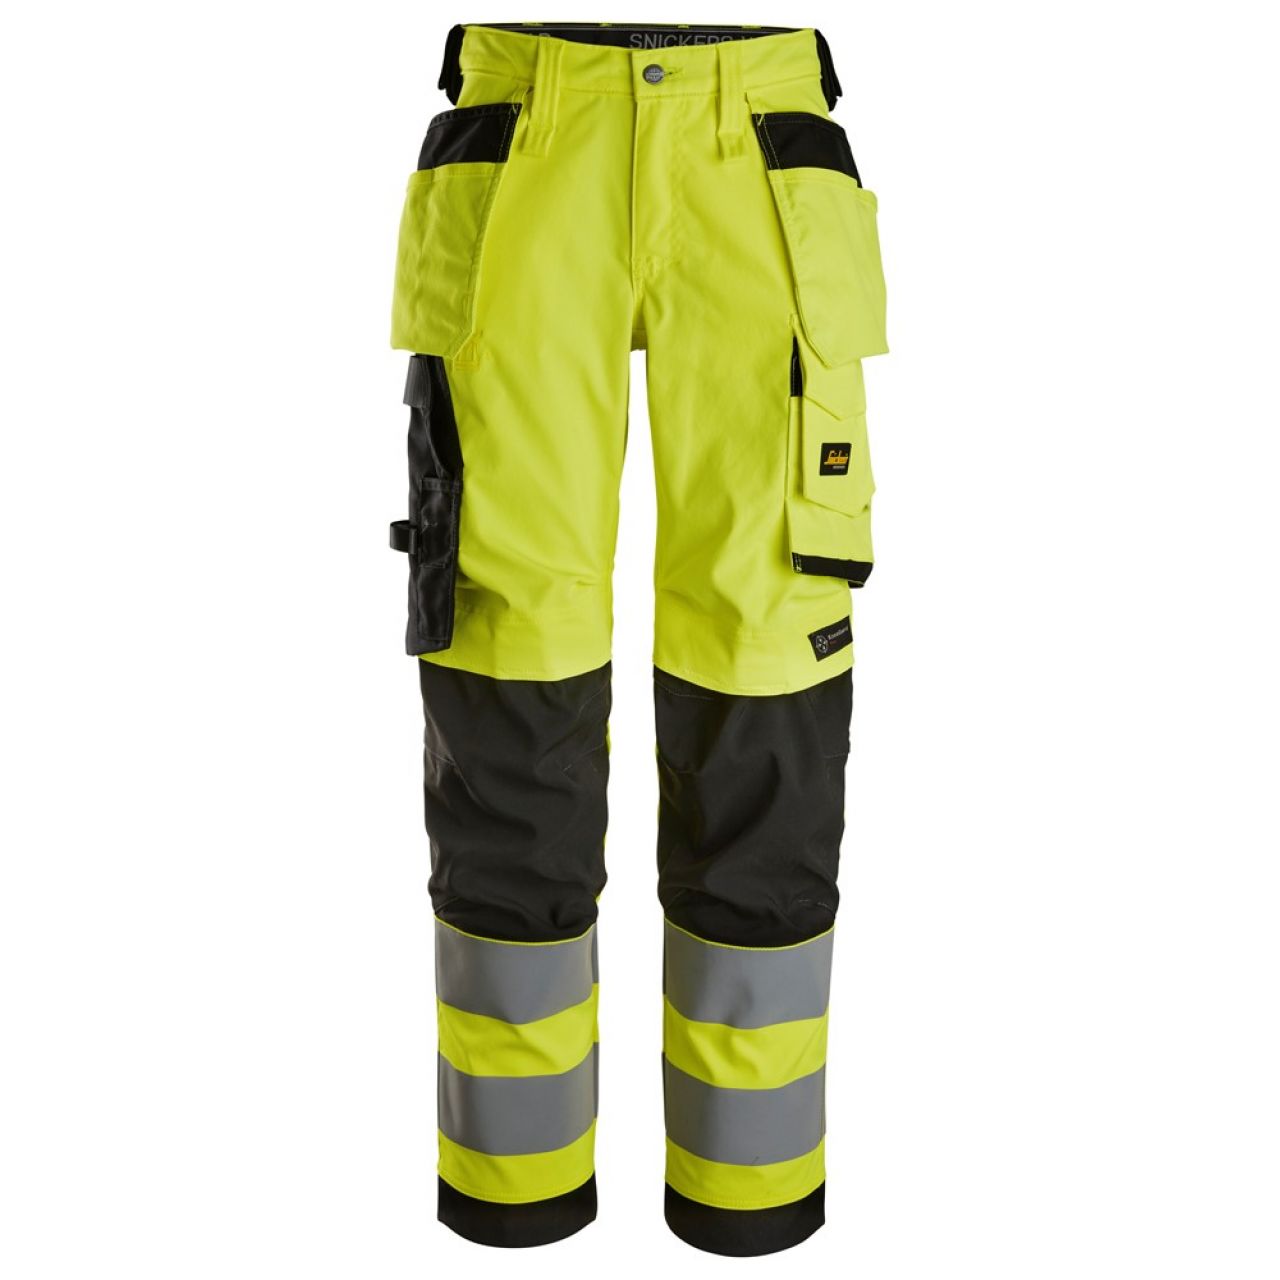 6743 Pantalones largos de trabajo elásticos de alta visibilidad clase 2 para mujer con bolsillos flotantes amarillo-negro talla 18